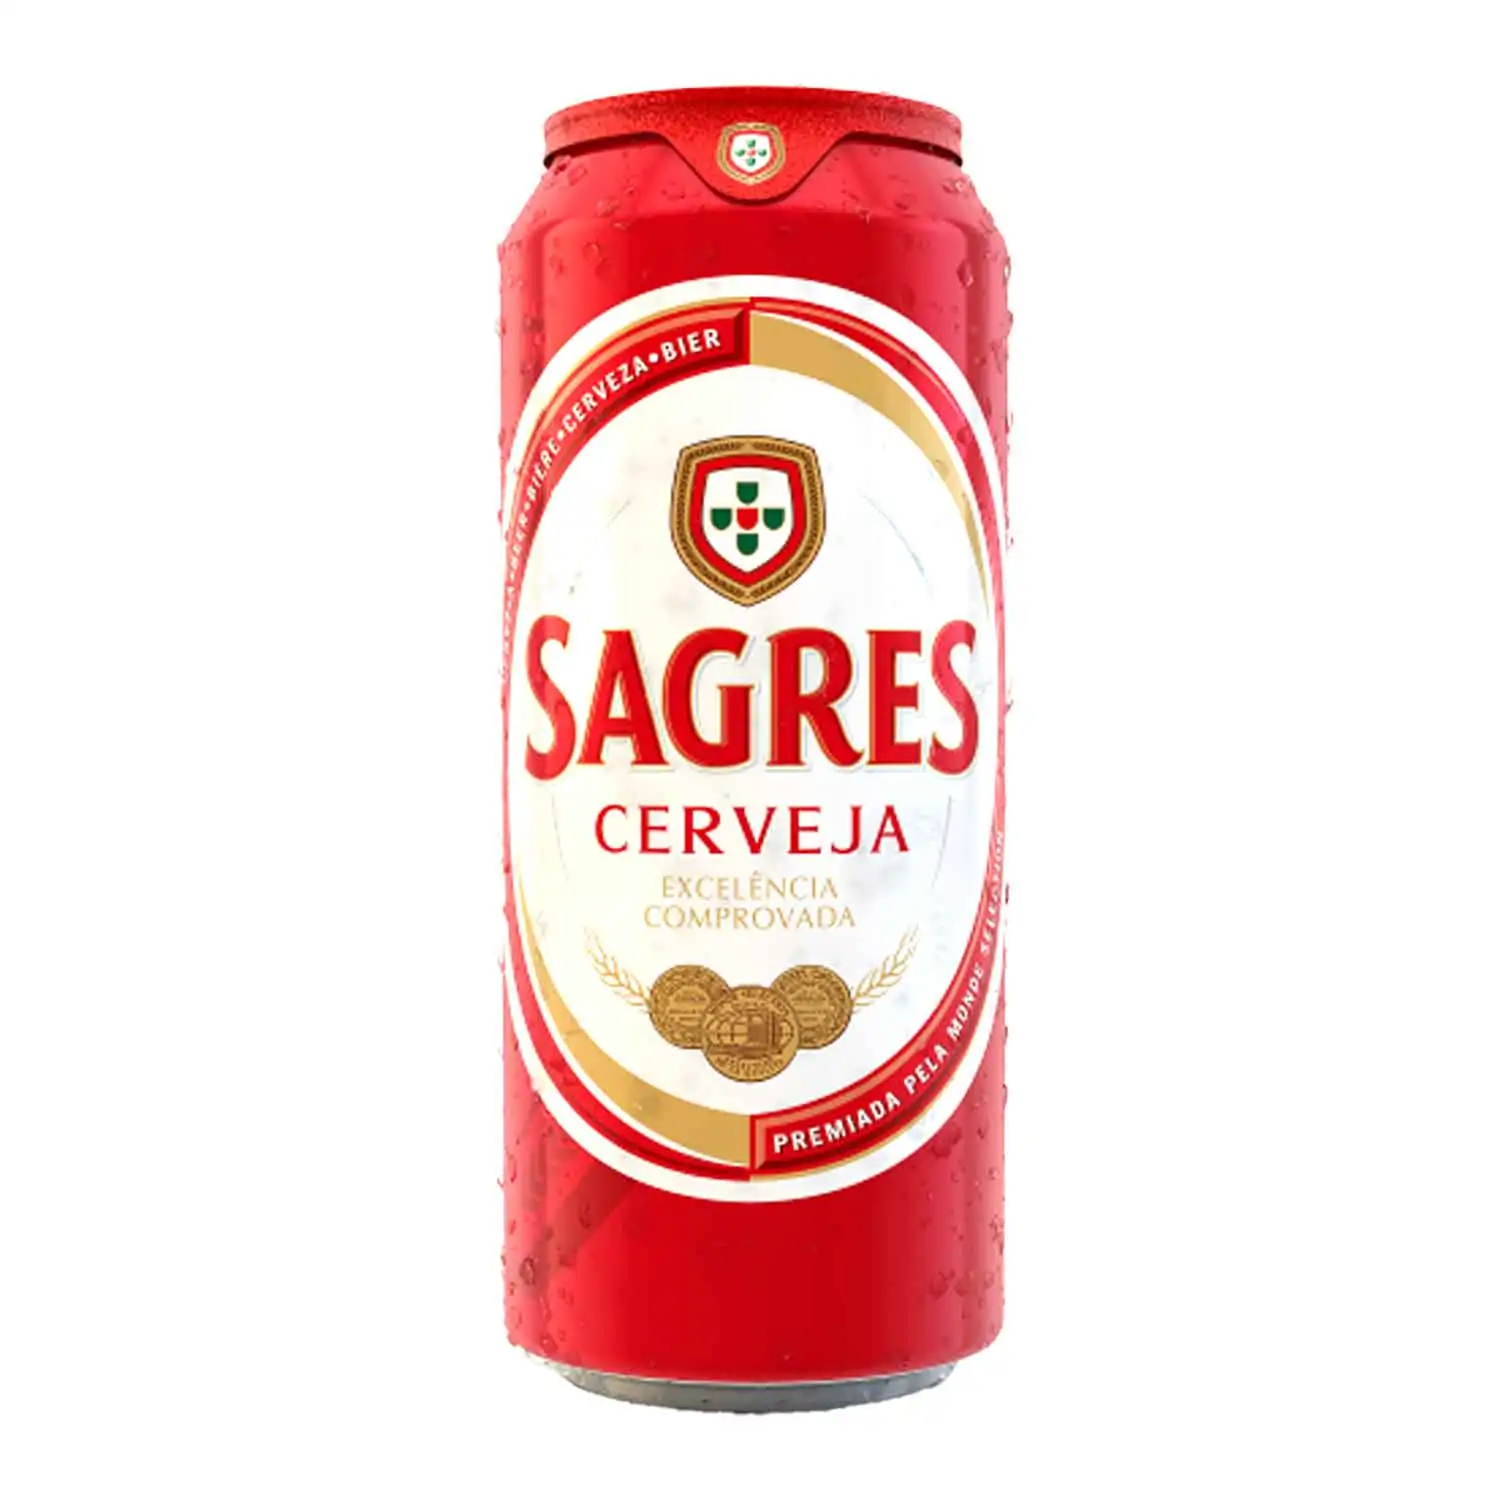 Sagres 50cl Alc 5% - Buy at Real Tobacco